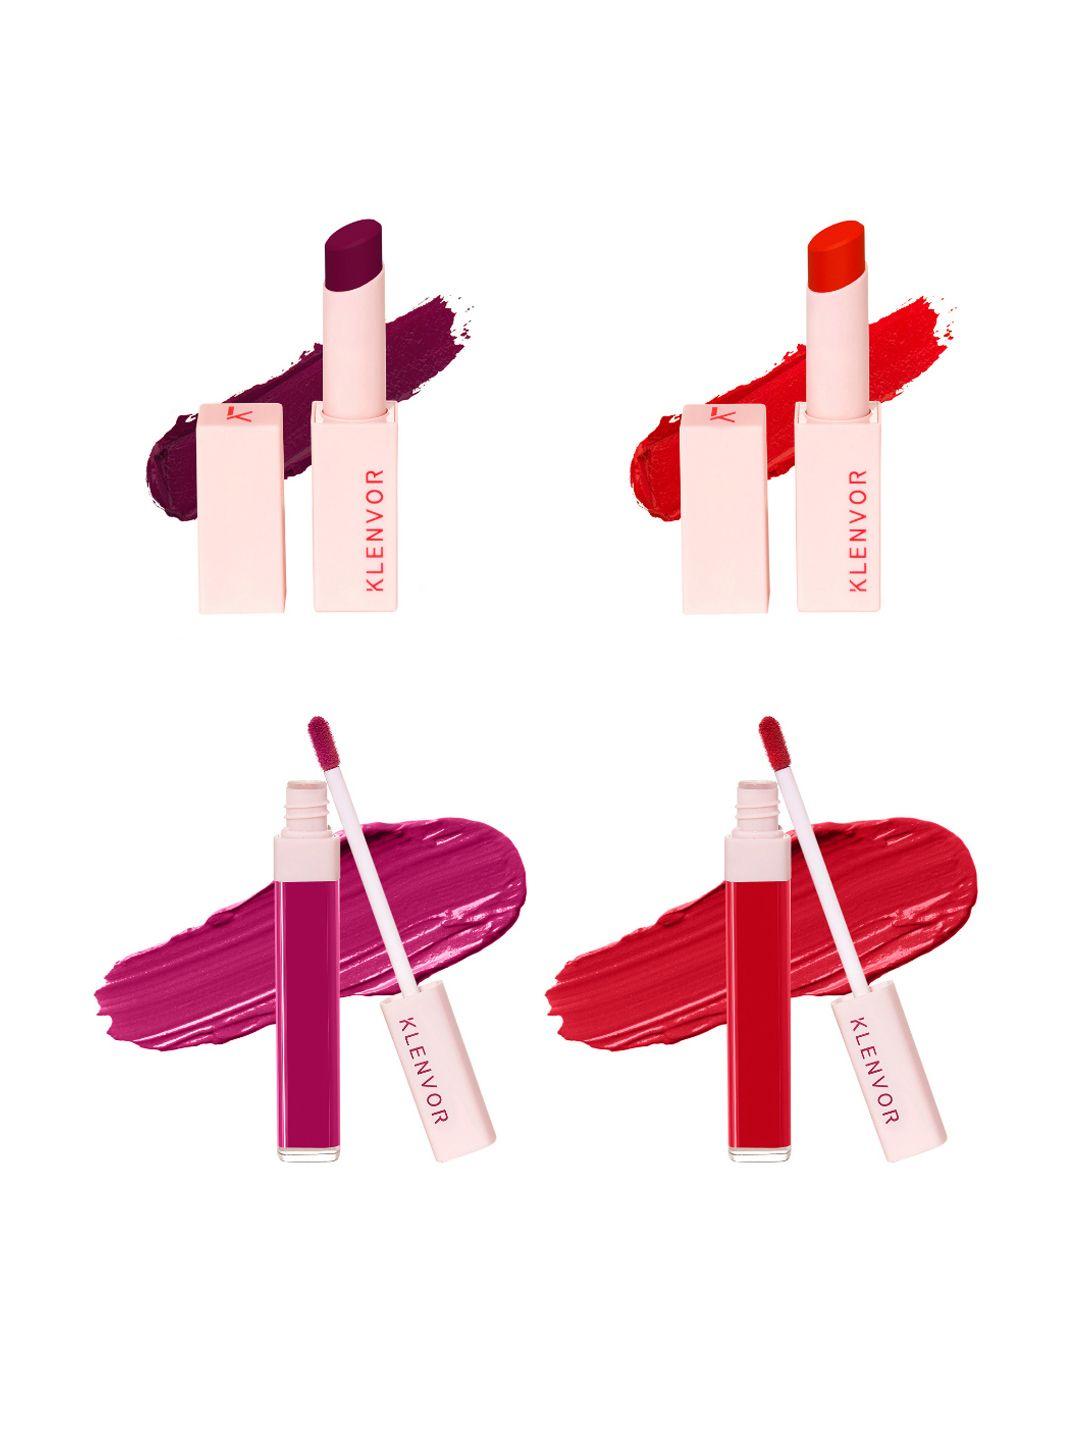 klenvor set of 4 trip to comfy lip lightweight matt liquid lipstick + crayon lipsticks - festive collection